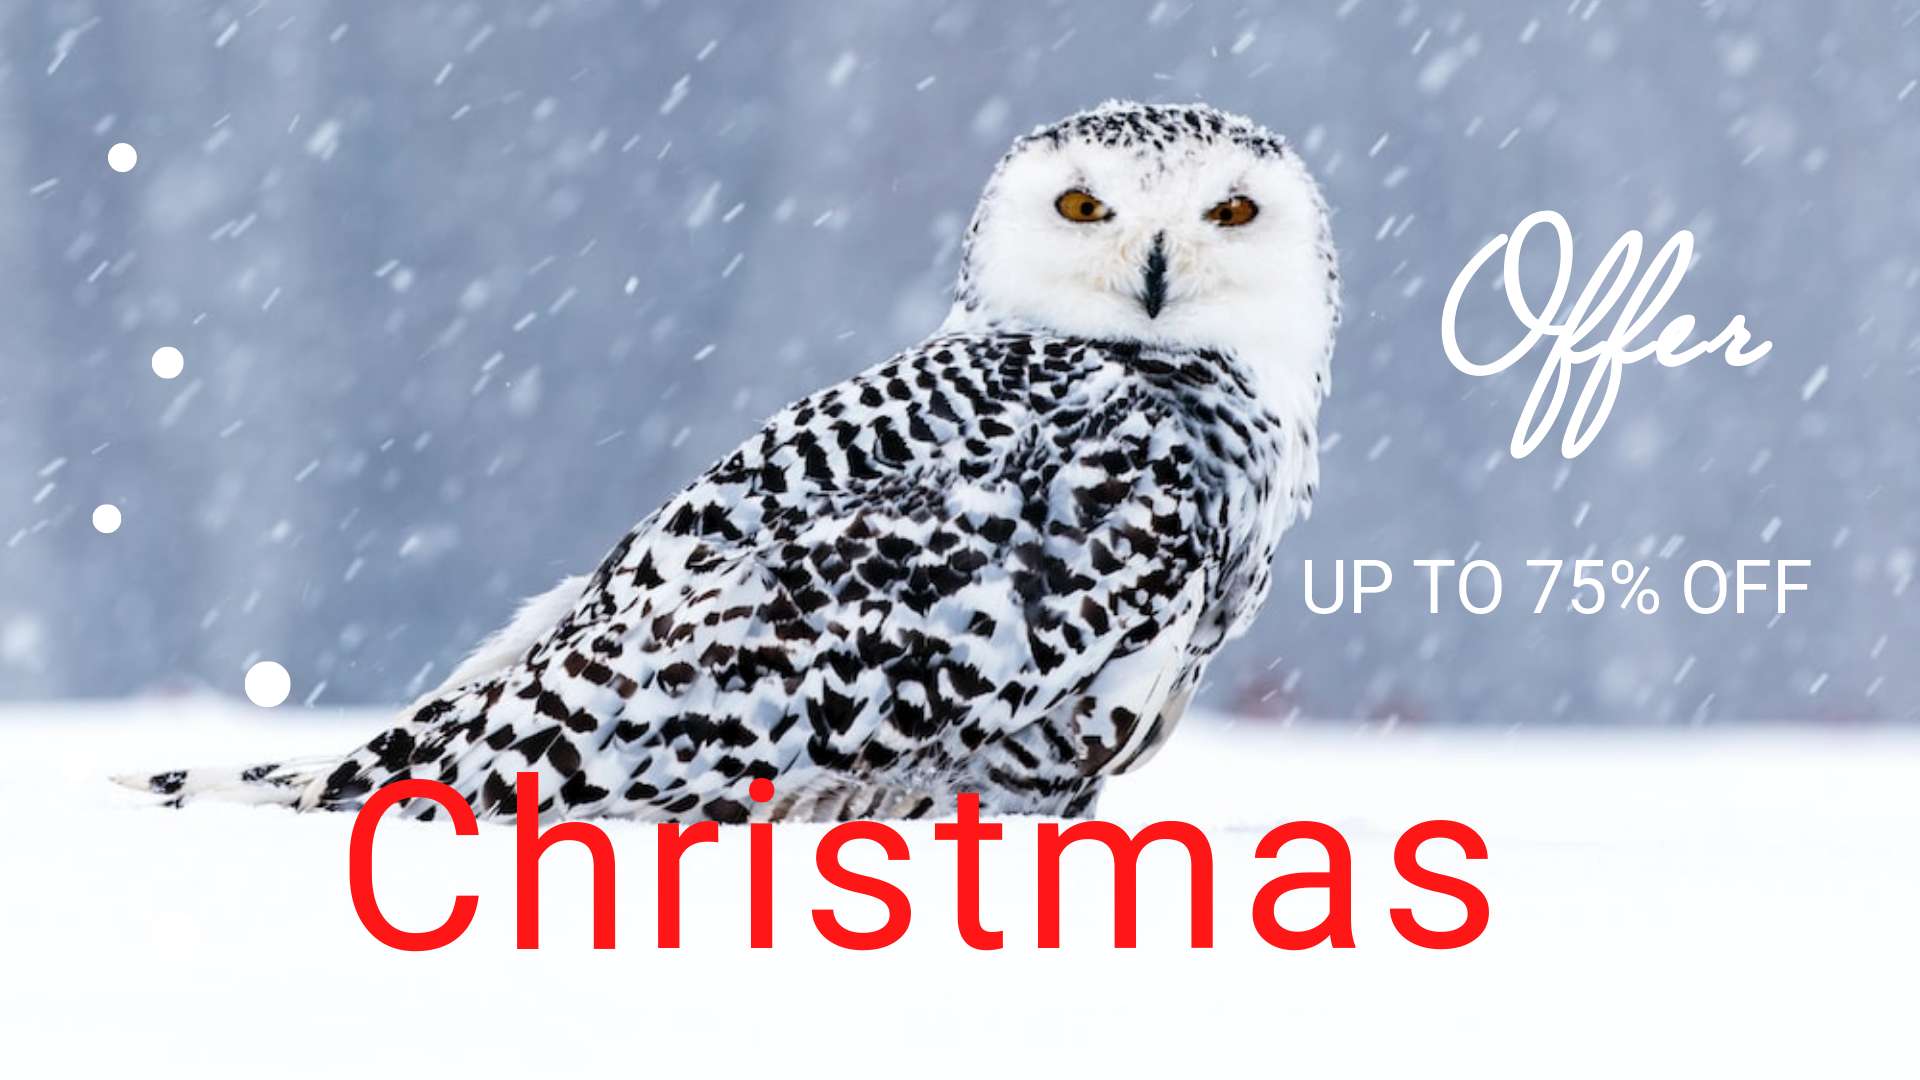 Рождественская зимняя презентация распродажи новогодних товаров с полярной совой